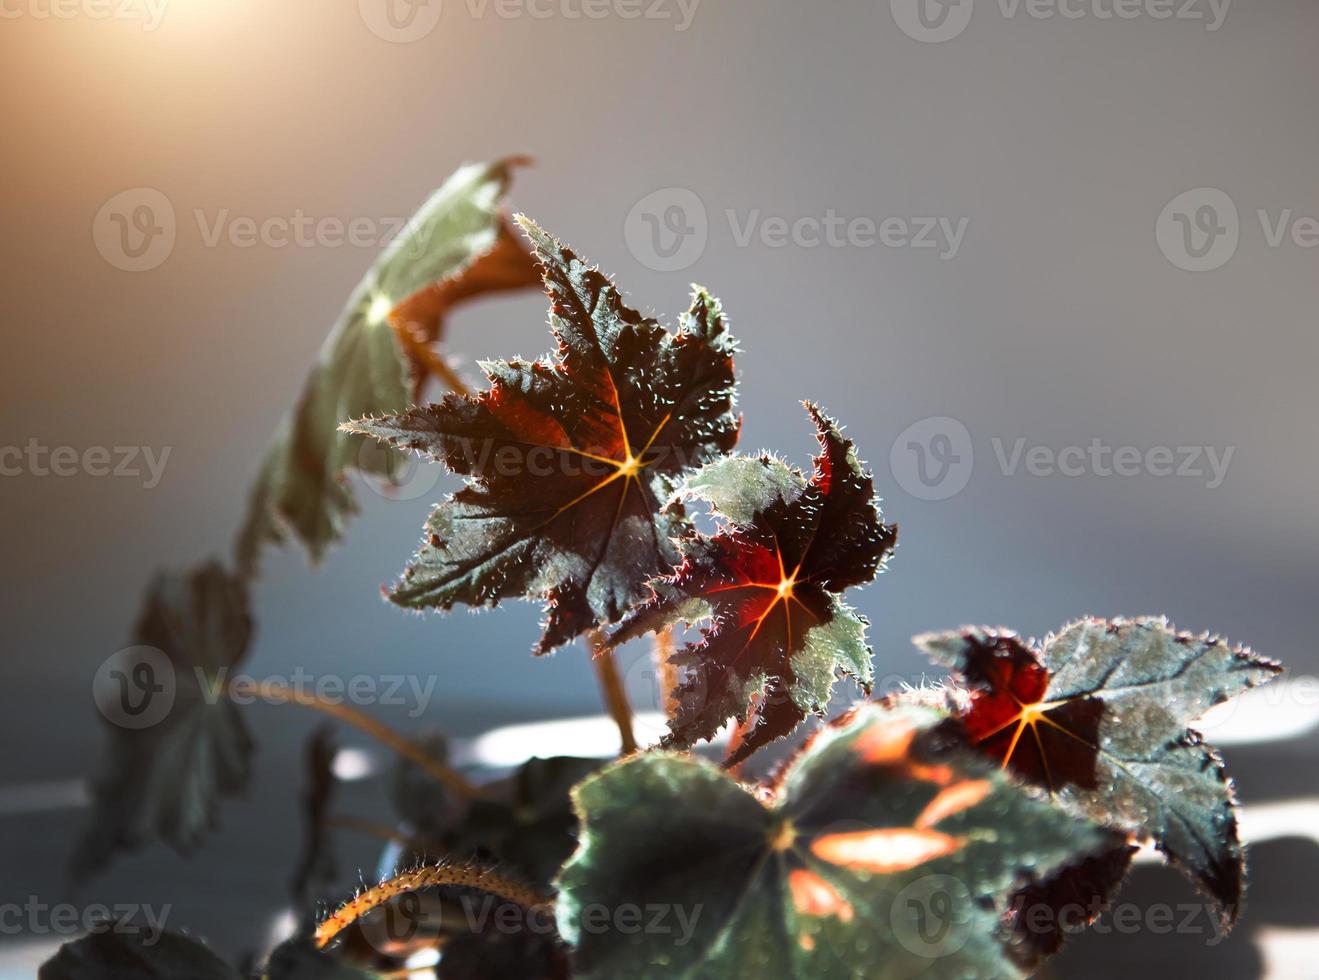 begonia cleopatra close-up leaf en el alféizar de la ventana a la luz del sol brillante con sombras. plantas de interior en macetas, decoración del hogar verde, cuidado y cultivo foto